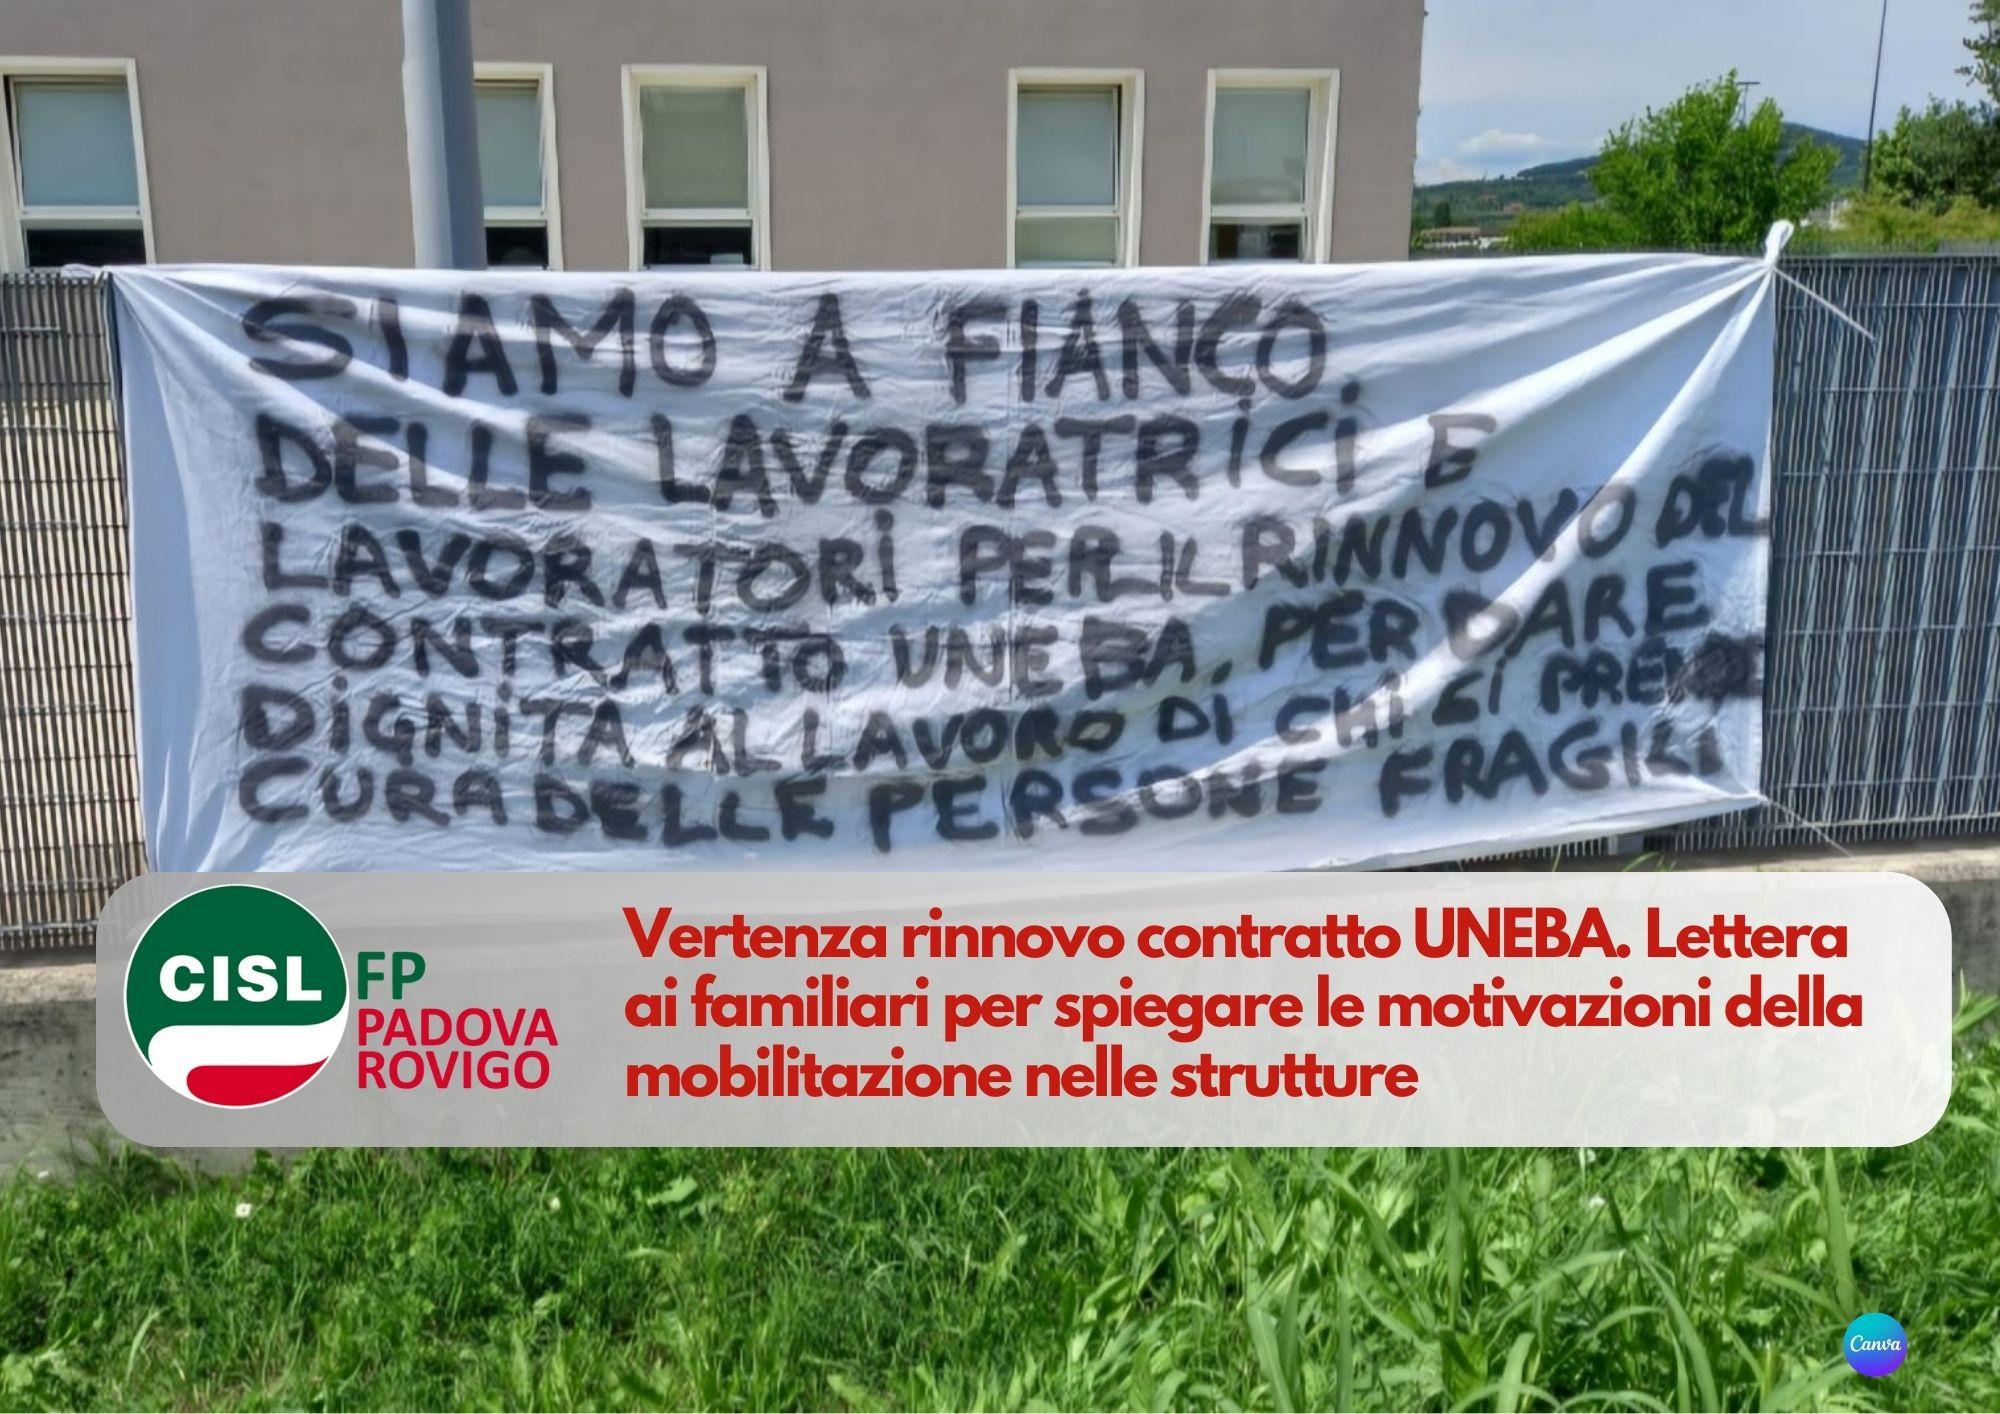 CISL FP Padova Rovigo. Lettera ai familiari per spiegare le motivazioni della mobilitazione strutture UNEBA